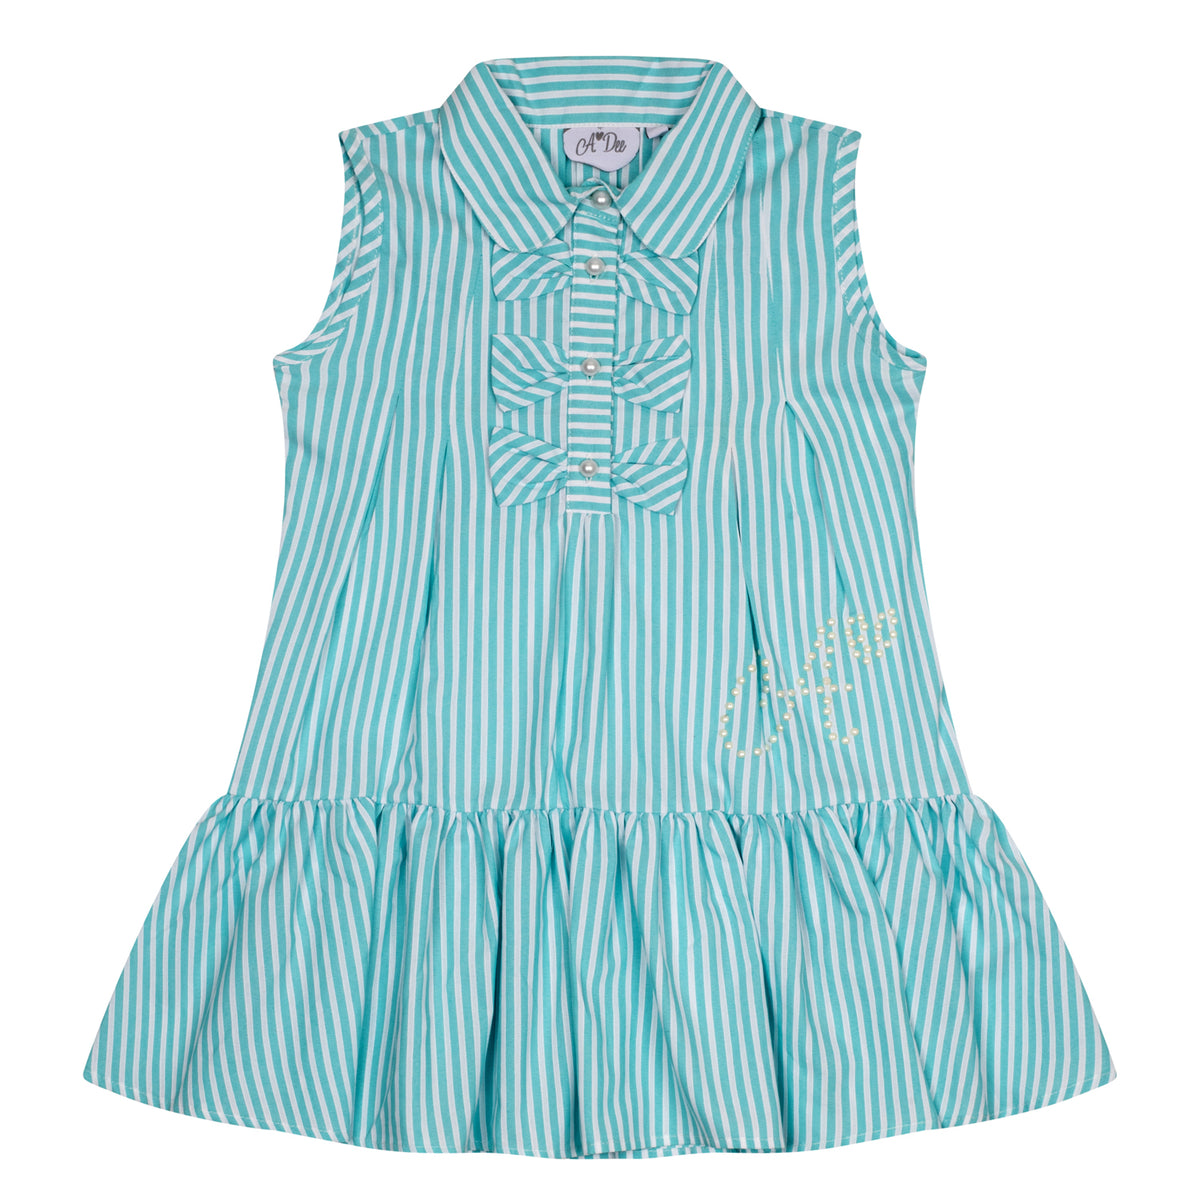 A Dee Girls 'Odette' Blue Stripe Dress